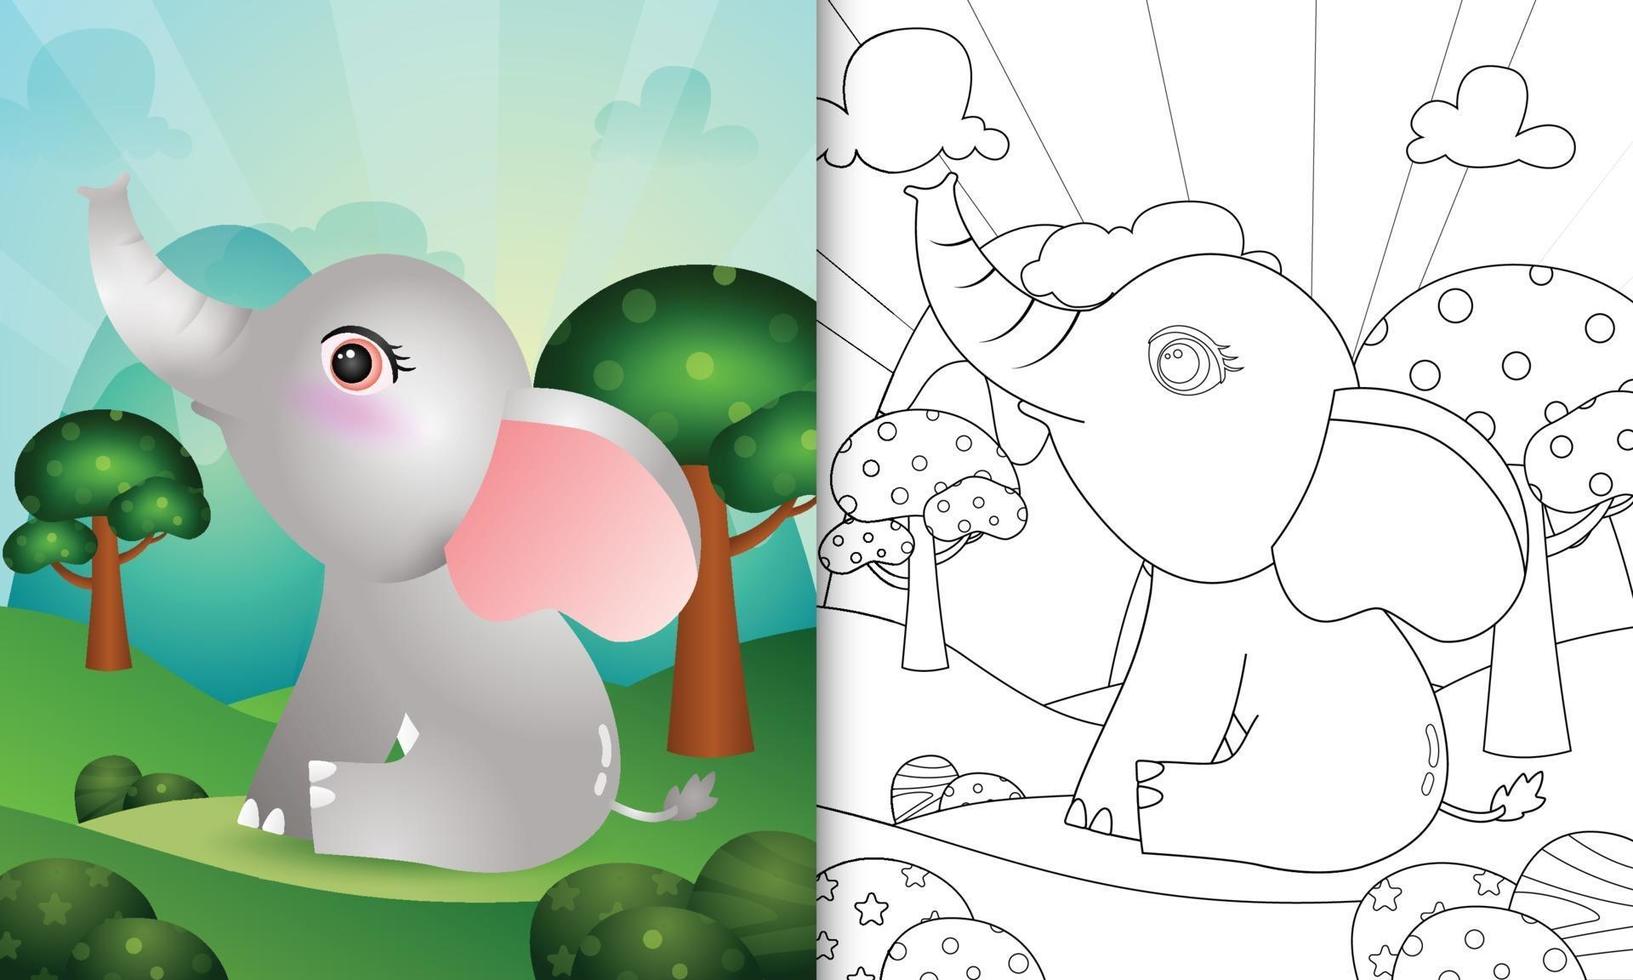 livro de colorir para crianças com uma ilustração de um elefante fofo vetor